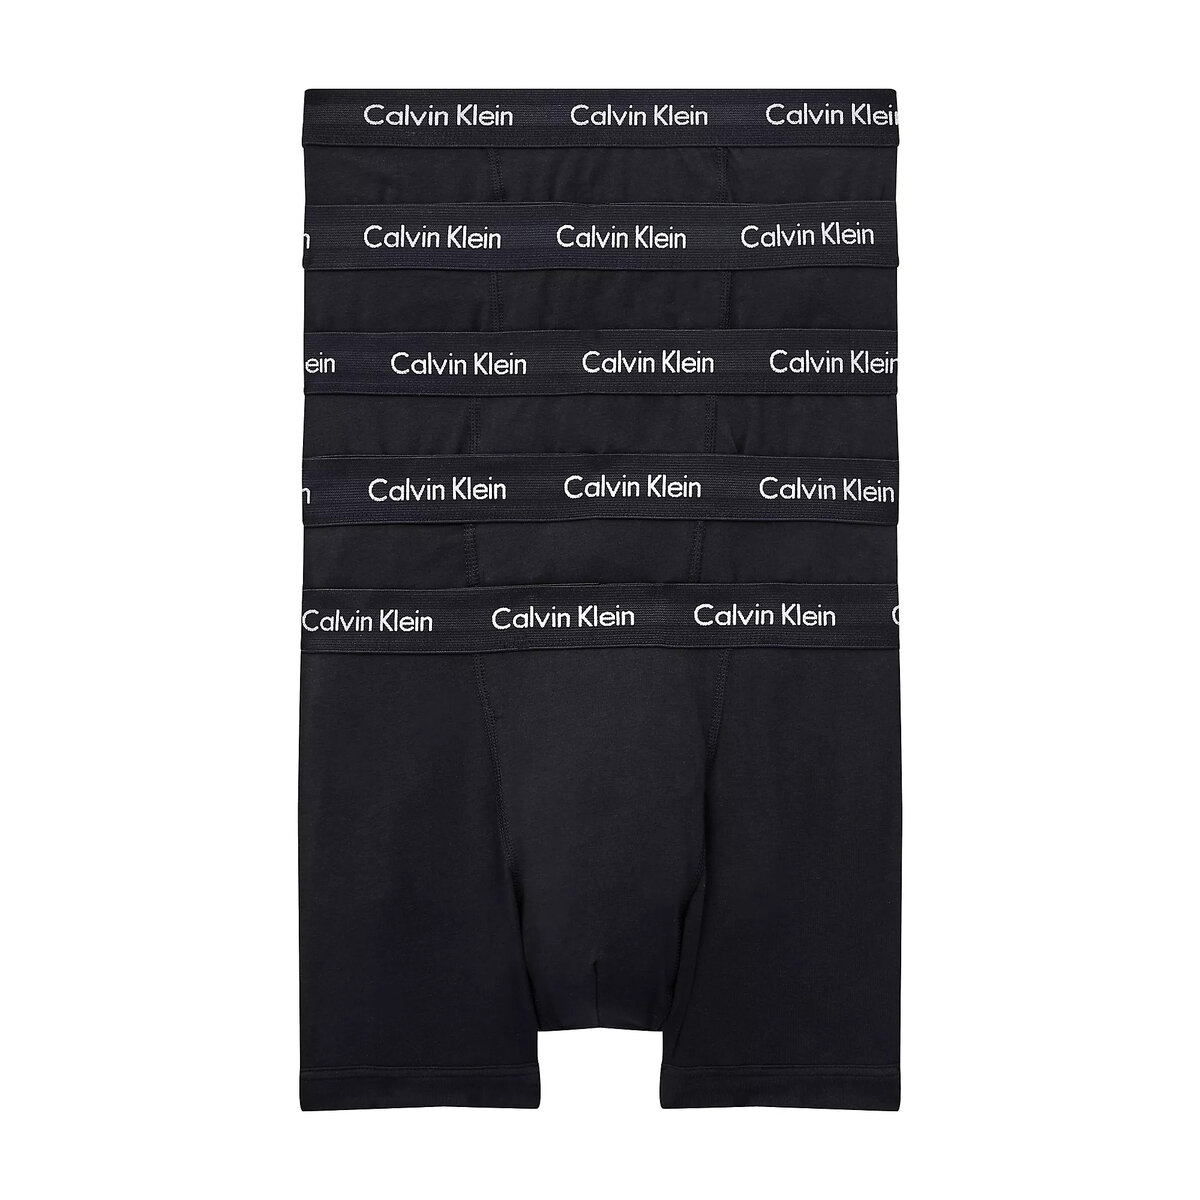 Mužské boxerky ESSENTIALS 5KS - Calvin Klein, L i652_000NB2877AXWB004